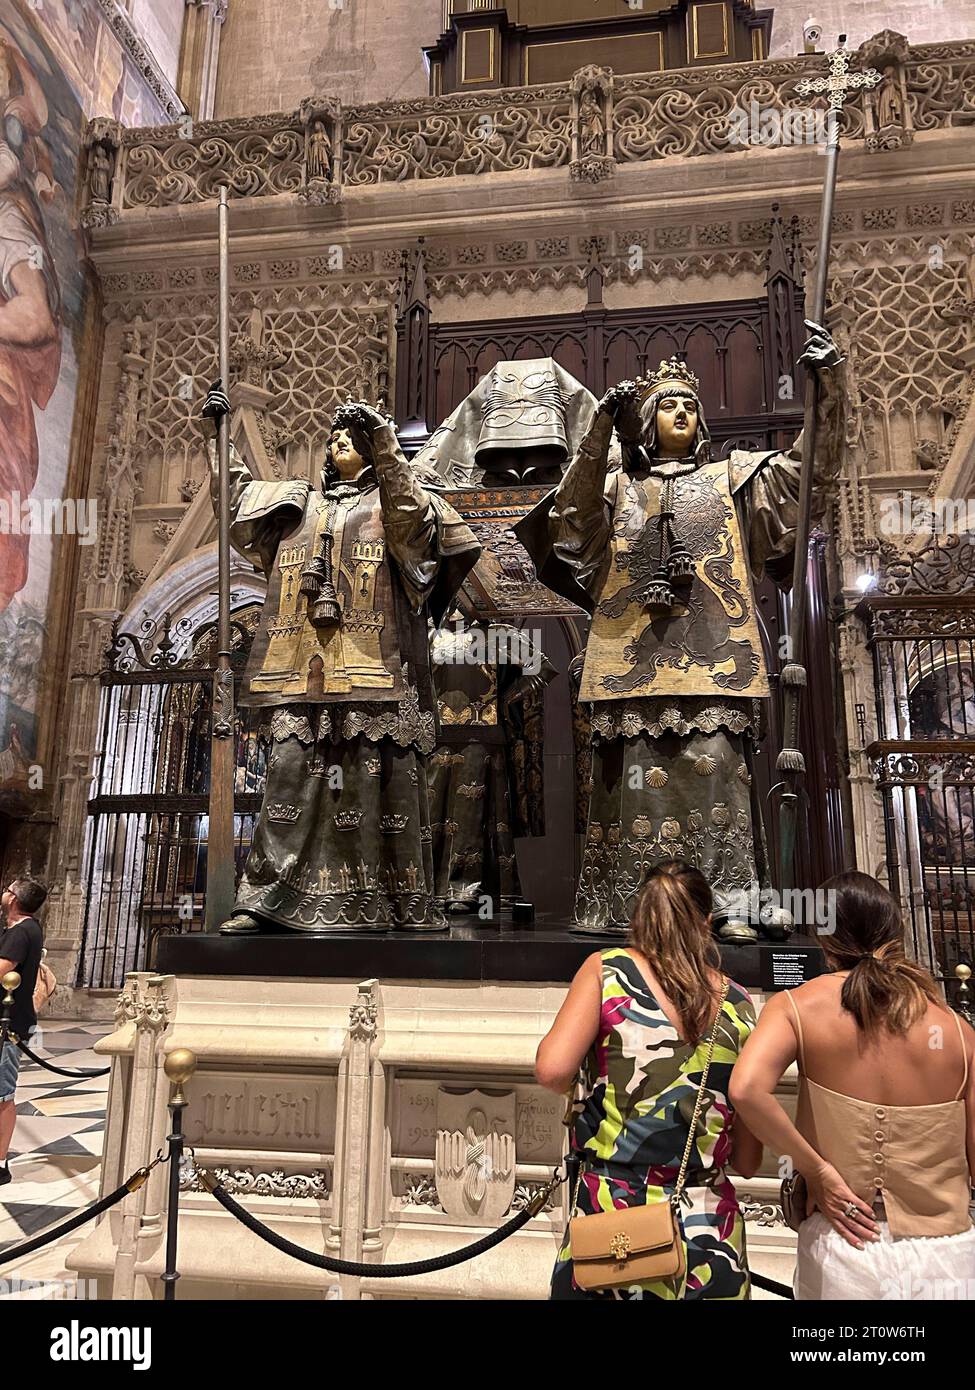 Sevilla, Spanien, Detail, Kunst im Inneren, Kathedrale der Heiligen Maria vom See, Touristen, die Statue sehen, Christoph Kolumbus Grab Stockfoto